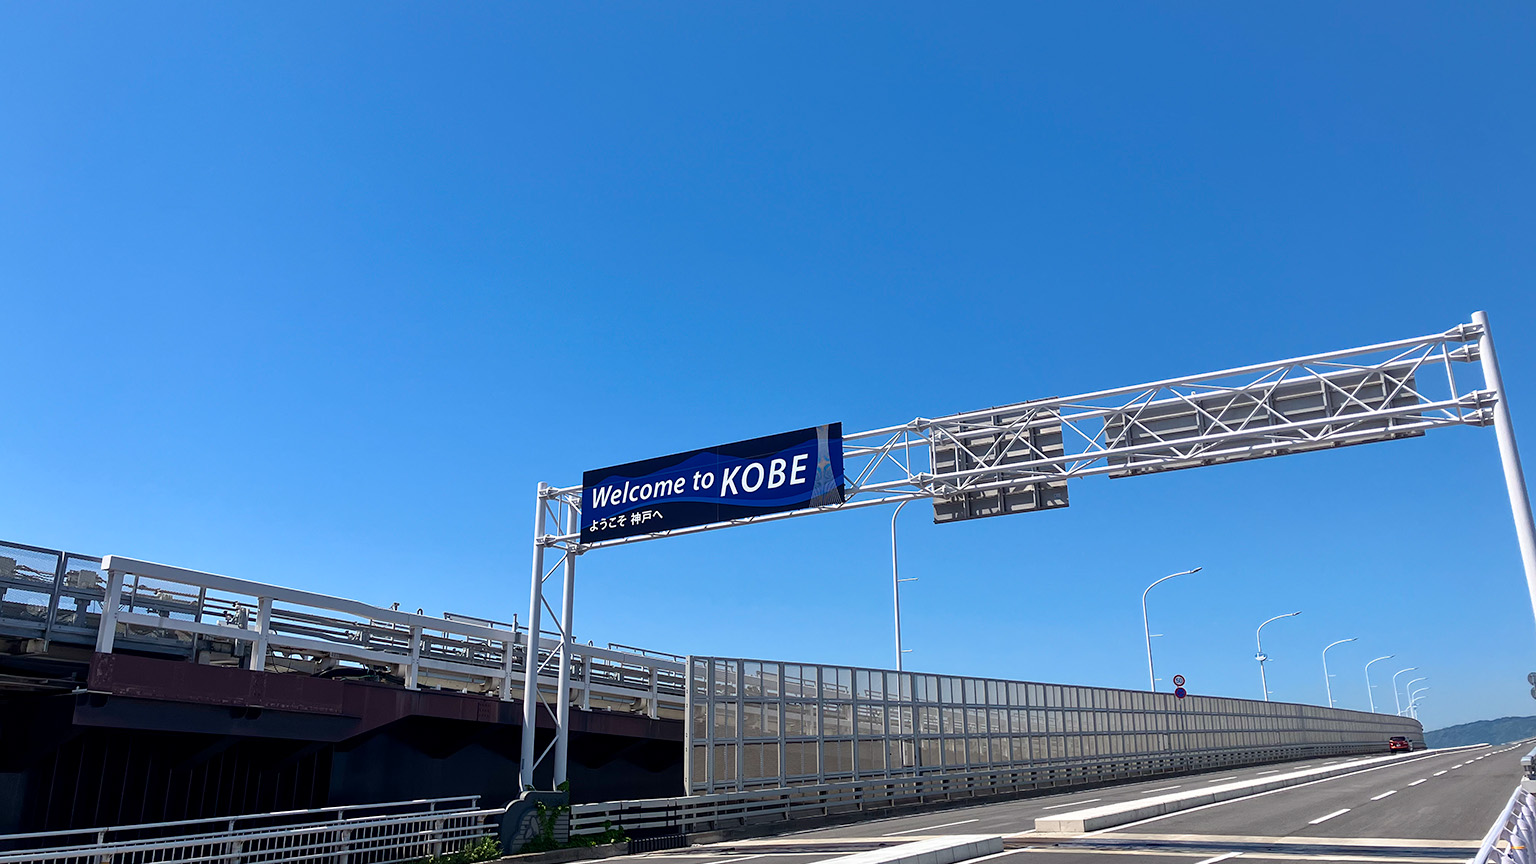 神戸スカイブリッジの Welcome to KOBE の写真